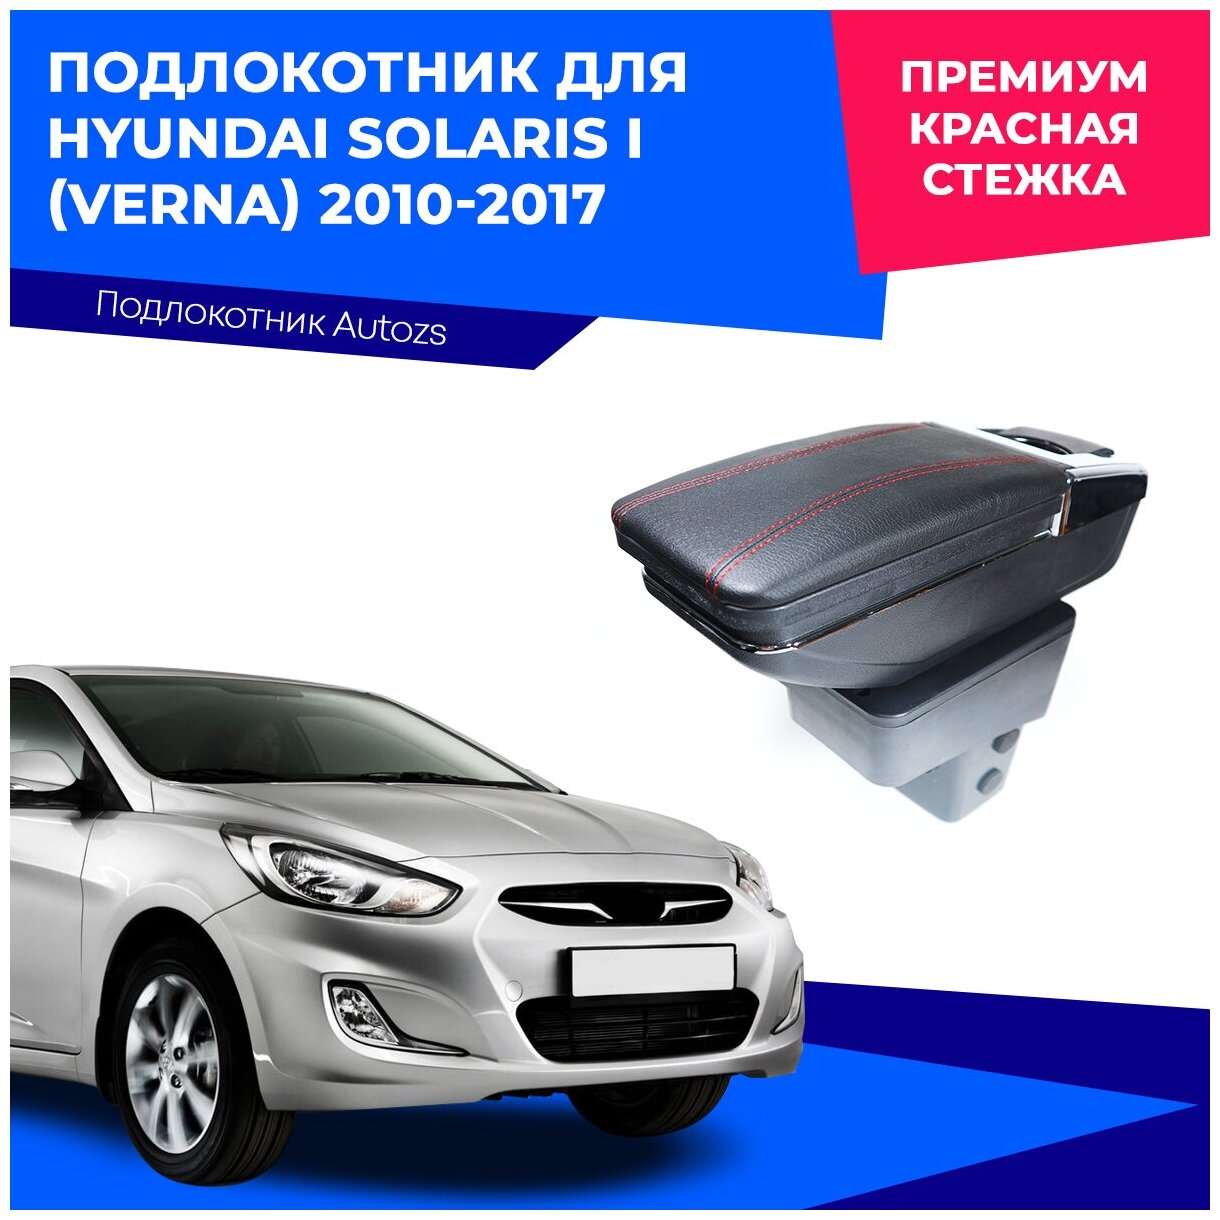 Подлокотник для Hyundai Solaris I (Verna)2010-2017 / Хендай Солярис (Верна) 1 2010-2017 Премиум красная строчка экокожа